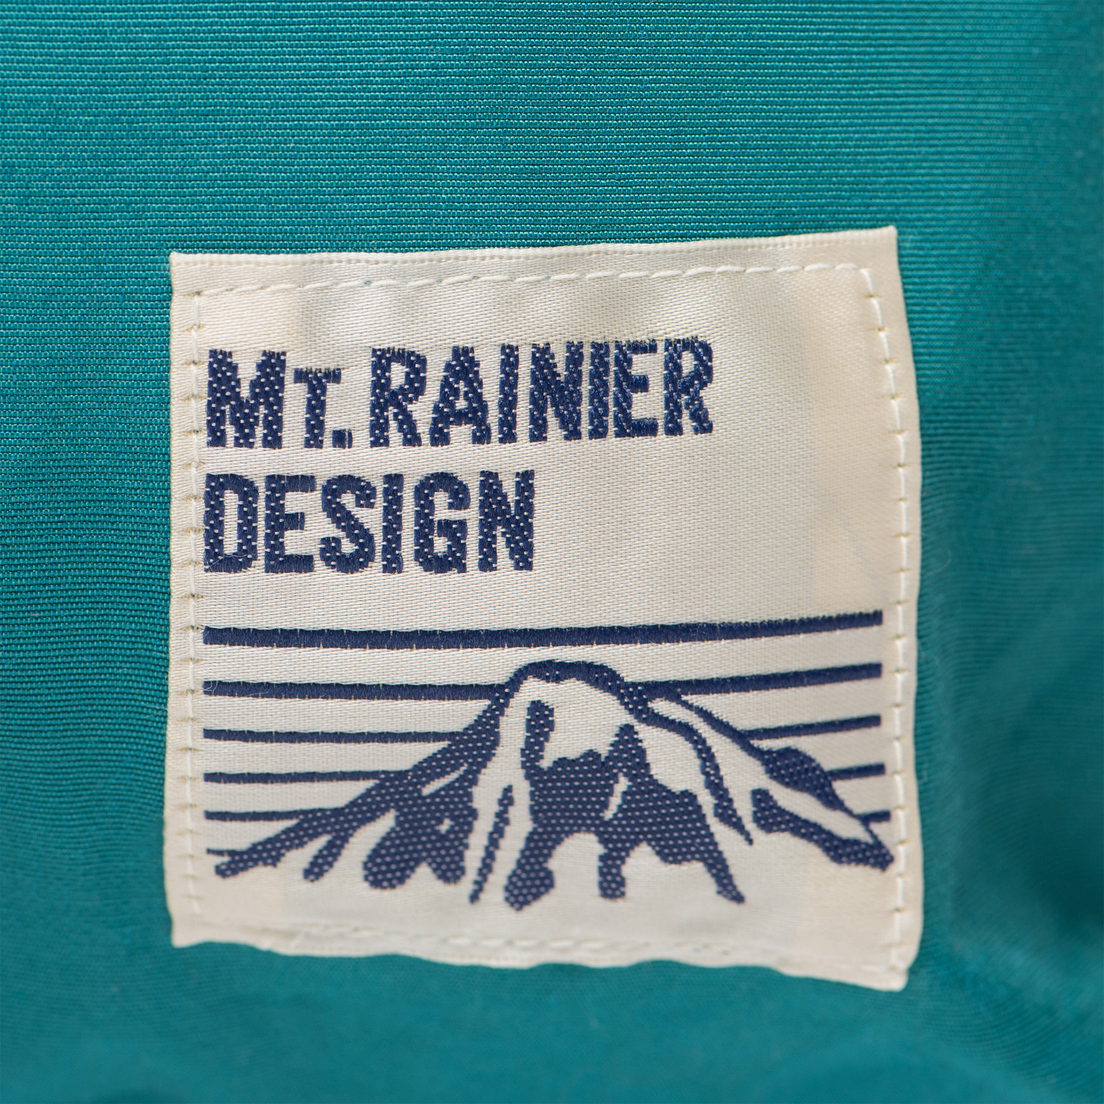 Mt. Rainier Design Рюкзак Original Pocket Simple Pack